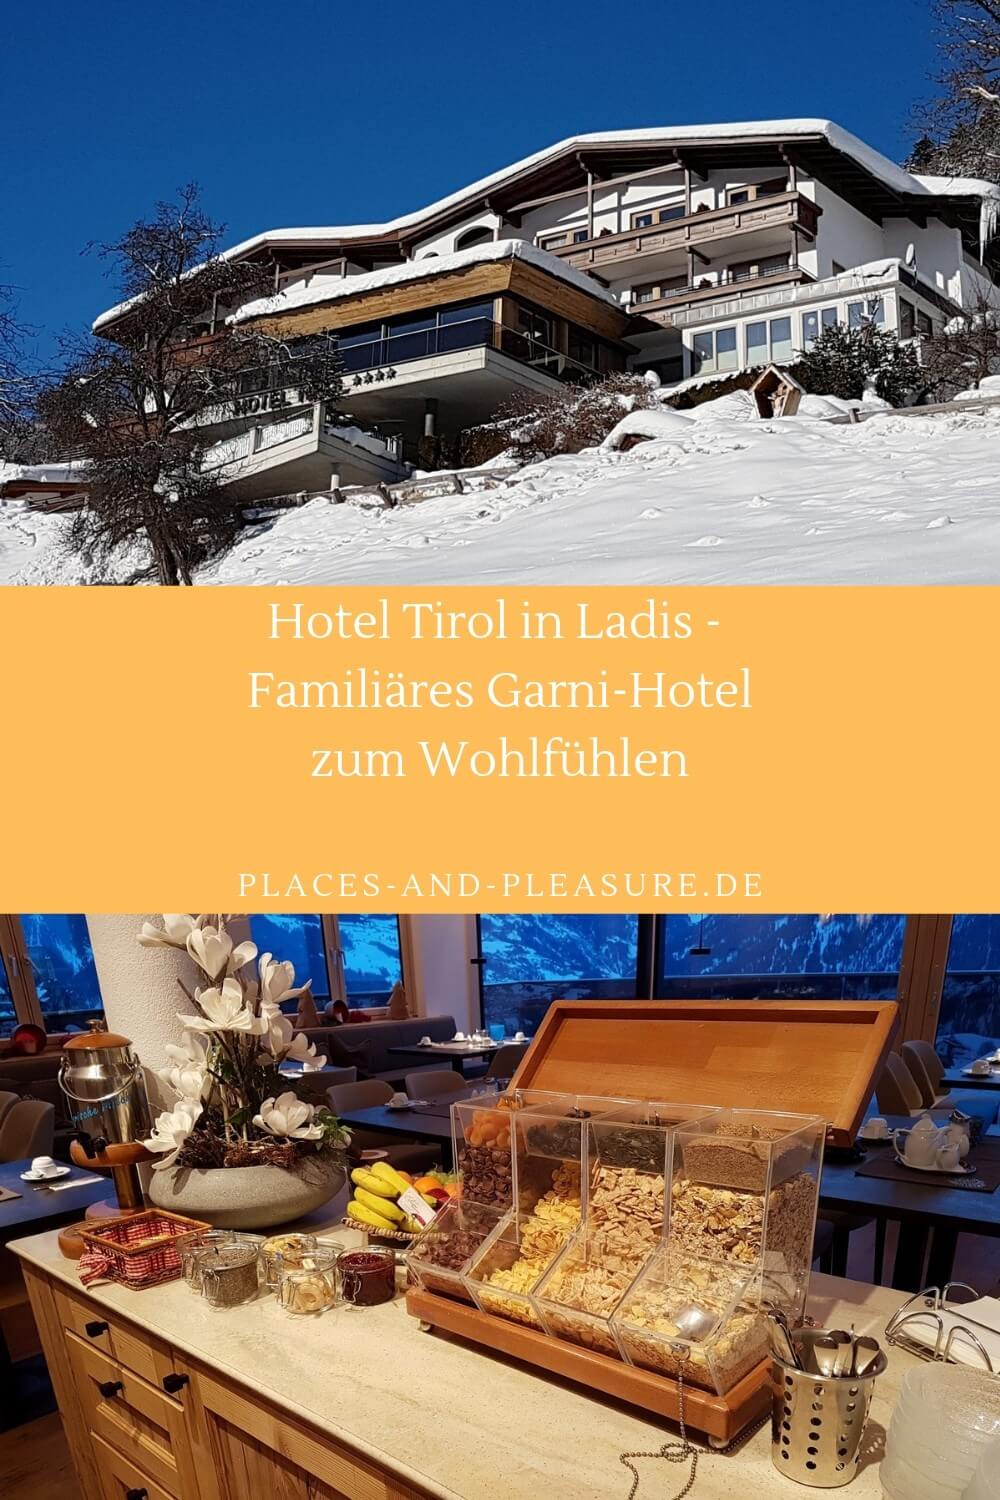 Du suchst ein gutes Hotel garni für deinen Urlaub in Serfaus Fiss Ladis? Dann kann ich das Hotel Tirol in Ladis empfehlen. Helle, gemütliche Zimmer und Aufenthaltsräume, nette Gastgeber, ein gutes Frühstück und an zwei Tagen in der Woche eine kleine Abendkarte mit Leckereien – all das findest du dort. Und die Seilbahn Richtung Sonnenburg und weiter nach Fiss erreichst du in knapp zehn Minuten zu Fuß. #Ladis #Tirol #Hoteltipp